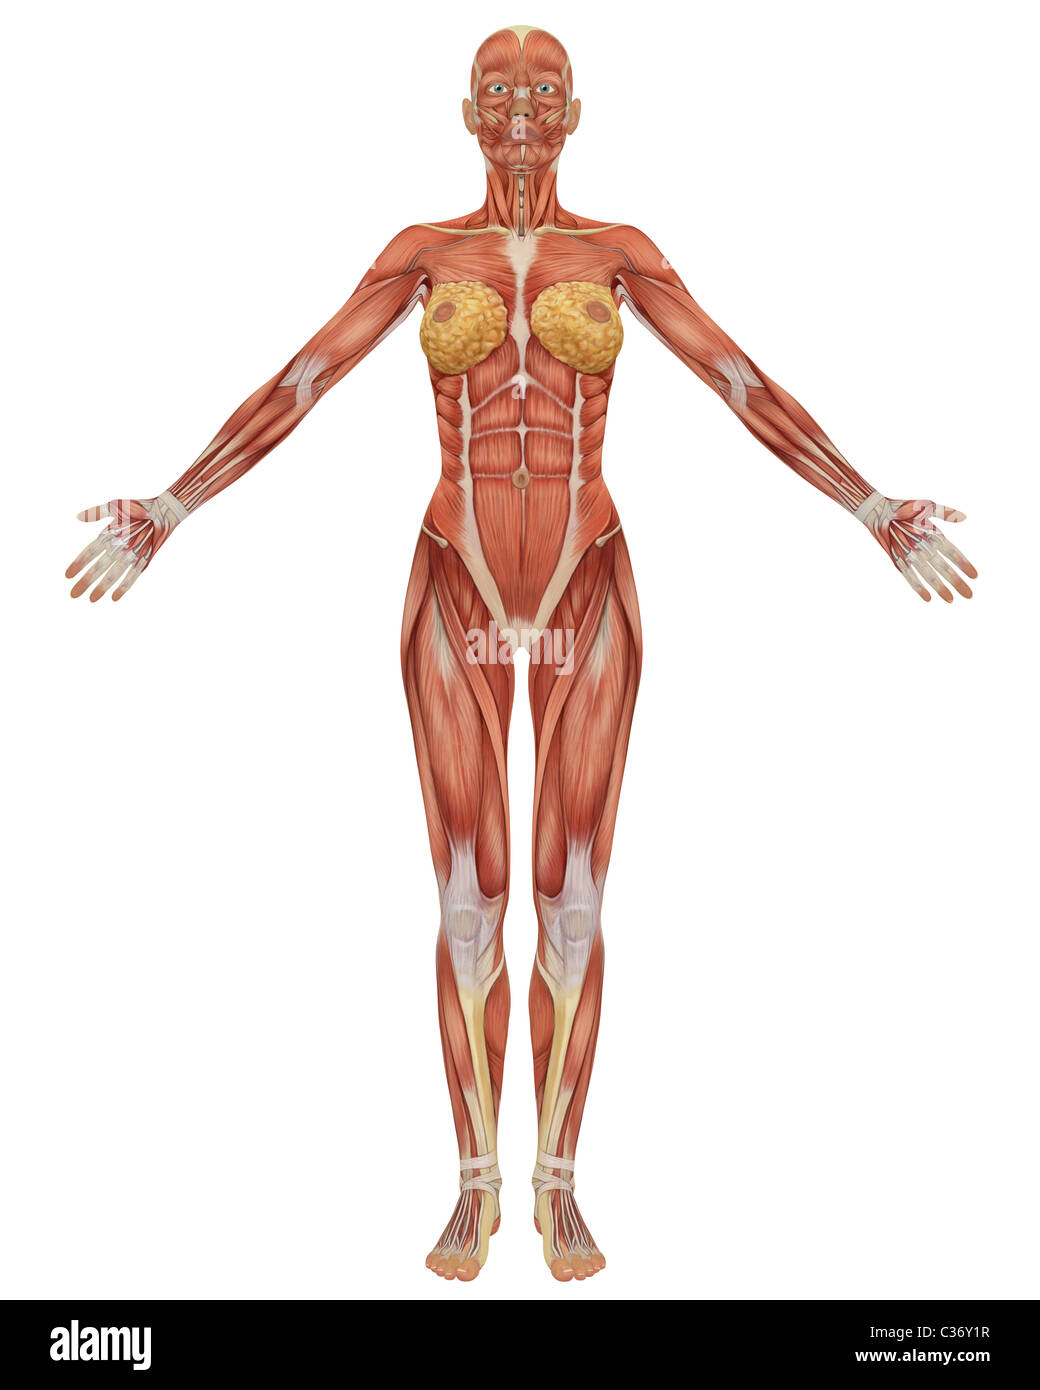 Anatomia muscular de la mujer fotografías e imágenes de alta resolución -  Alamy